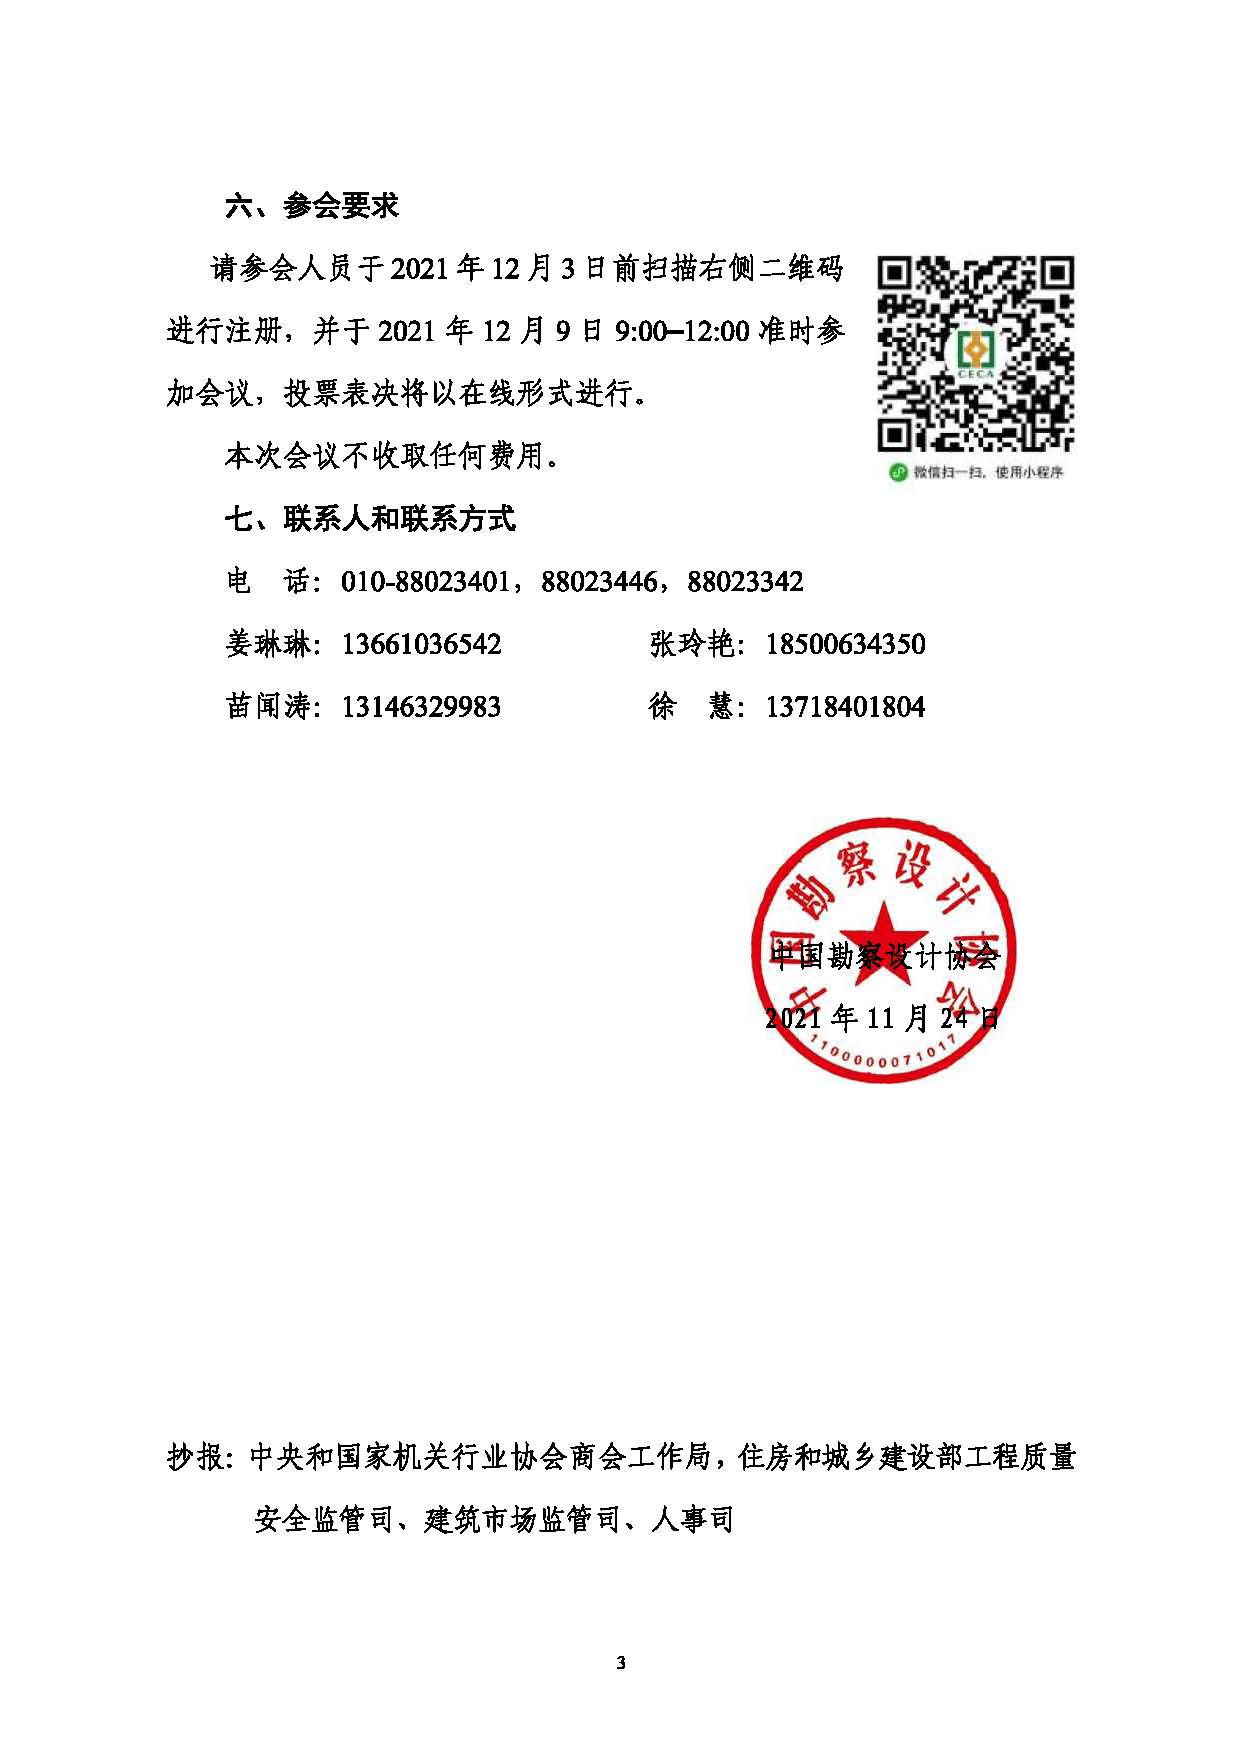 附件：关于召开中国勘察设计协会第七届会员代表大会暨第七届第一次理事会议的通知_页面_3.jpg